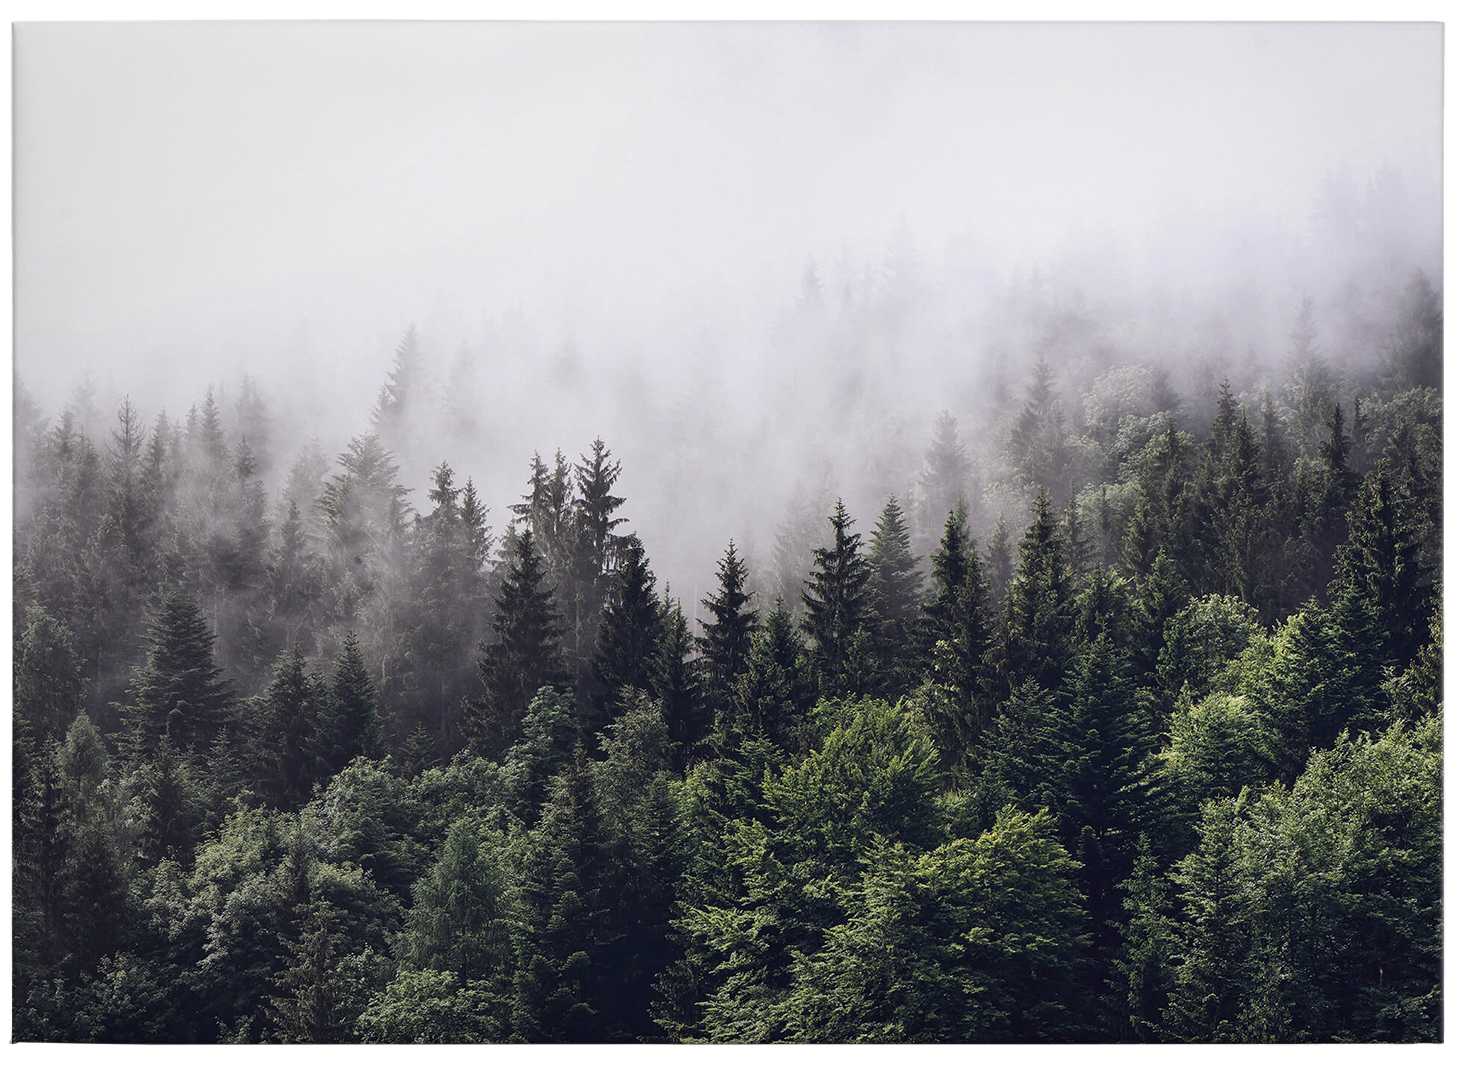             Toile Forêt dans la brume matinale - 0,70 m x 0,50 m
        